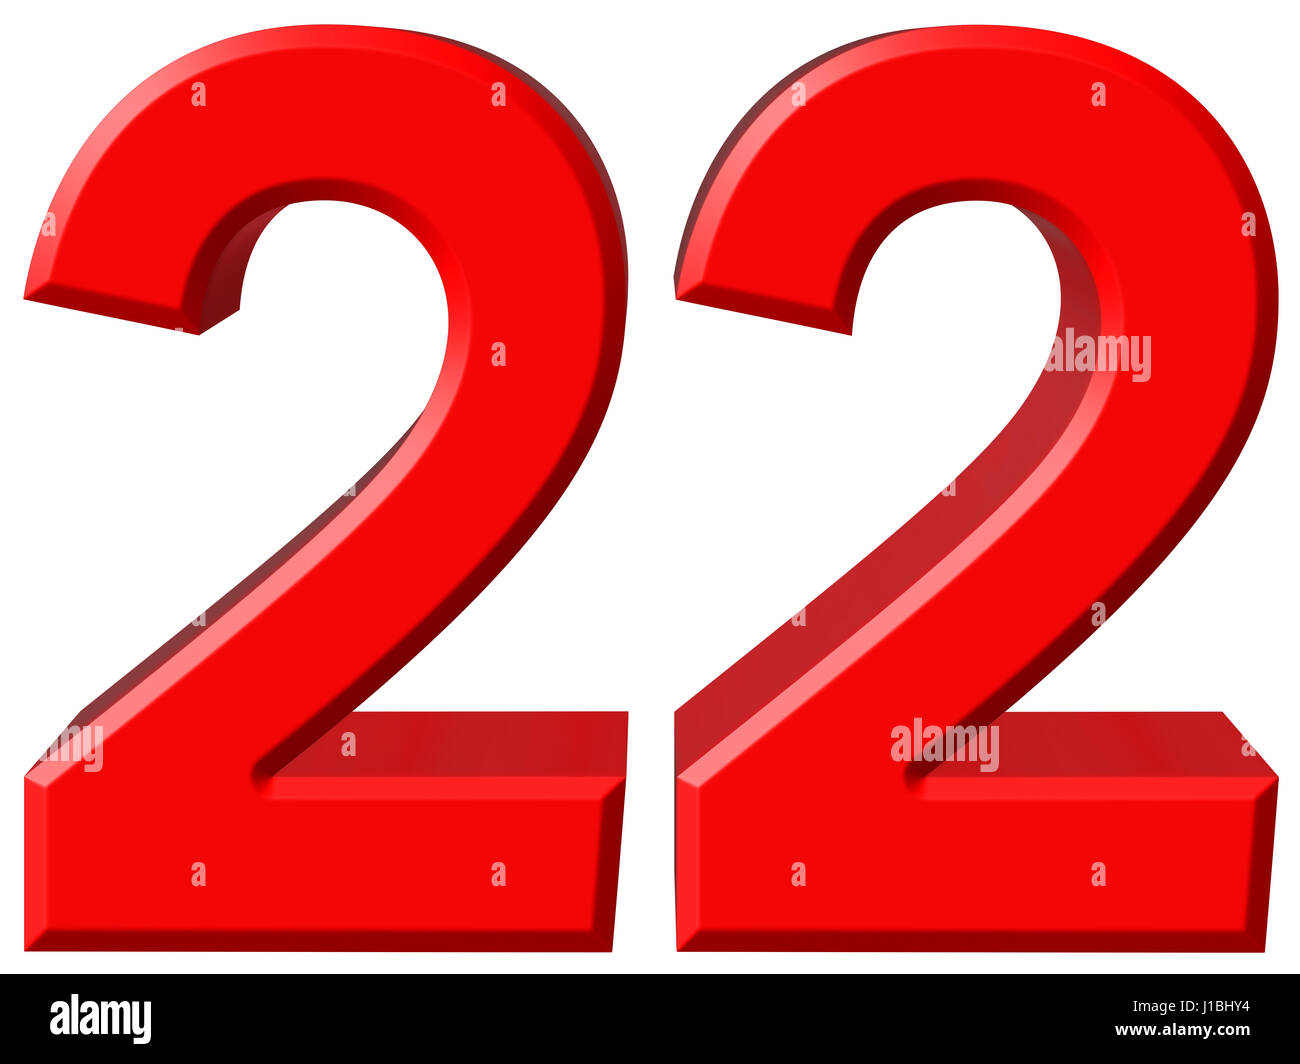 1 x 20 22. Цифра 22 красная. Цифра 22 на прозрачном фоне. Цифра 22 в 3д. Цифра 22 на белом фоне.